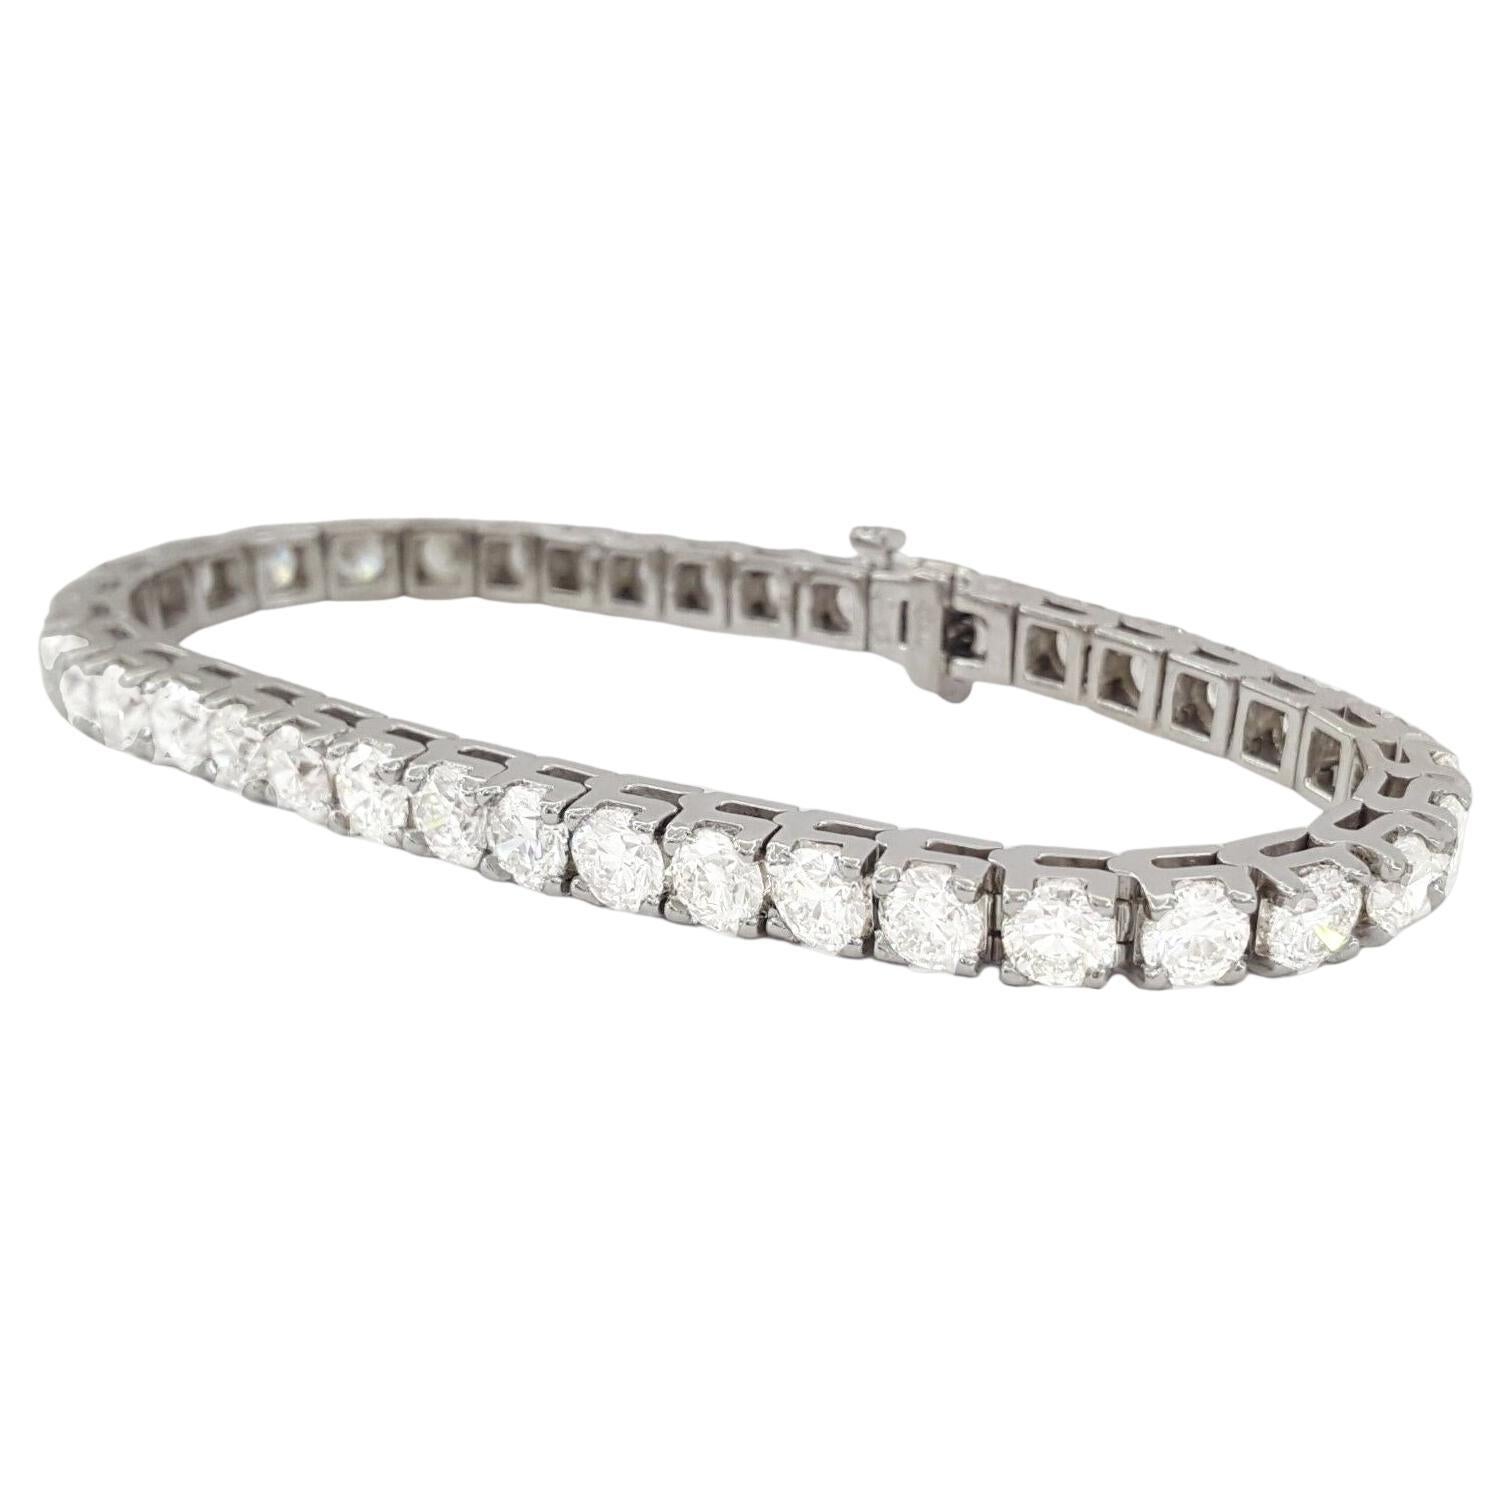 Offrez-vous le summum du luxe avec notre extraordinaire bracelet tennis en diamants de 8 carats, un chef-d'œuvre réalisé en or blanc 18 carats lustré. Ce bracelet enchanteur présente une seule rangée de diamants impeccablement assortis, totalisant